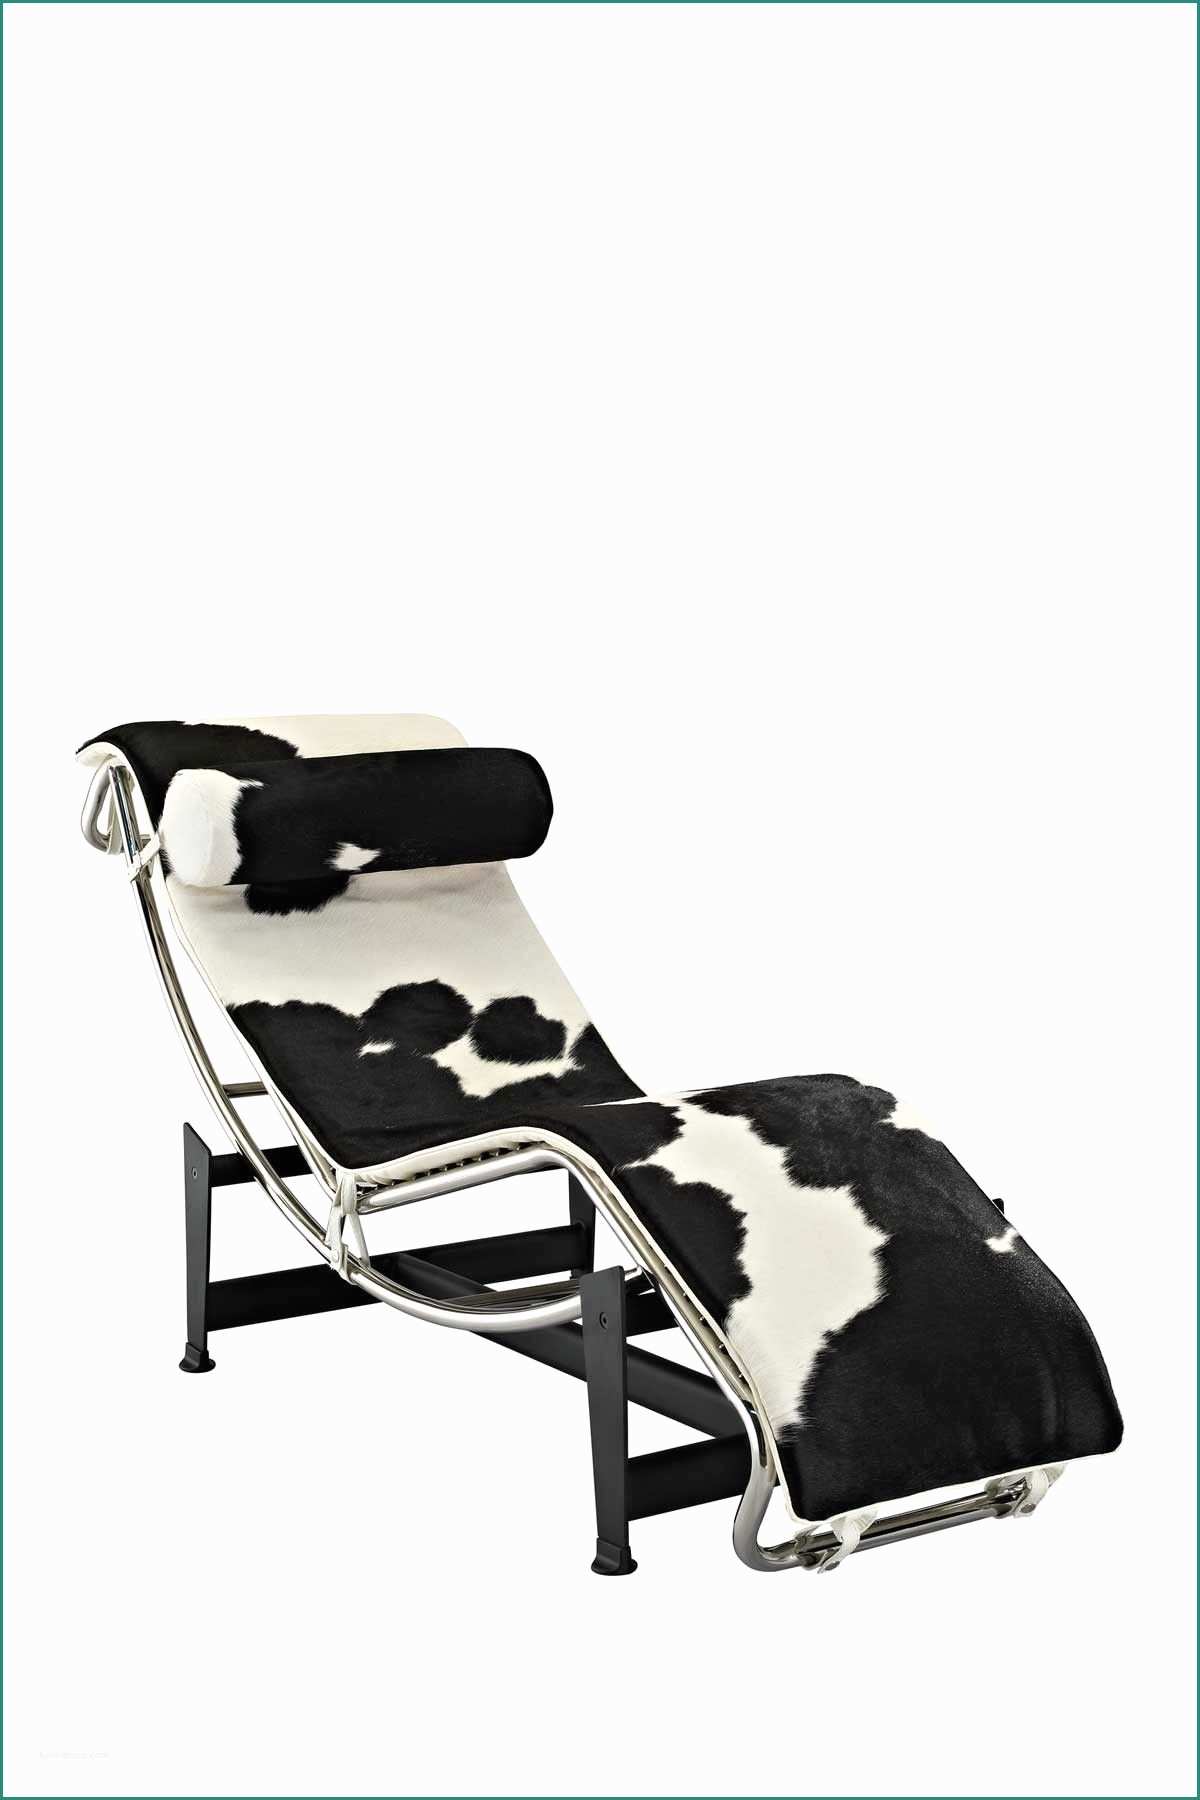 Poltrona Le Corbusier E Le Corbusier Pony Hide Chaise Lounge Chair